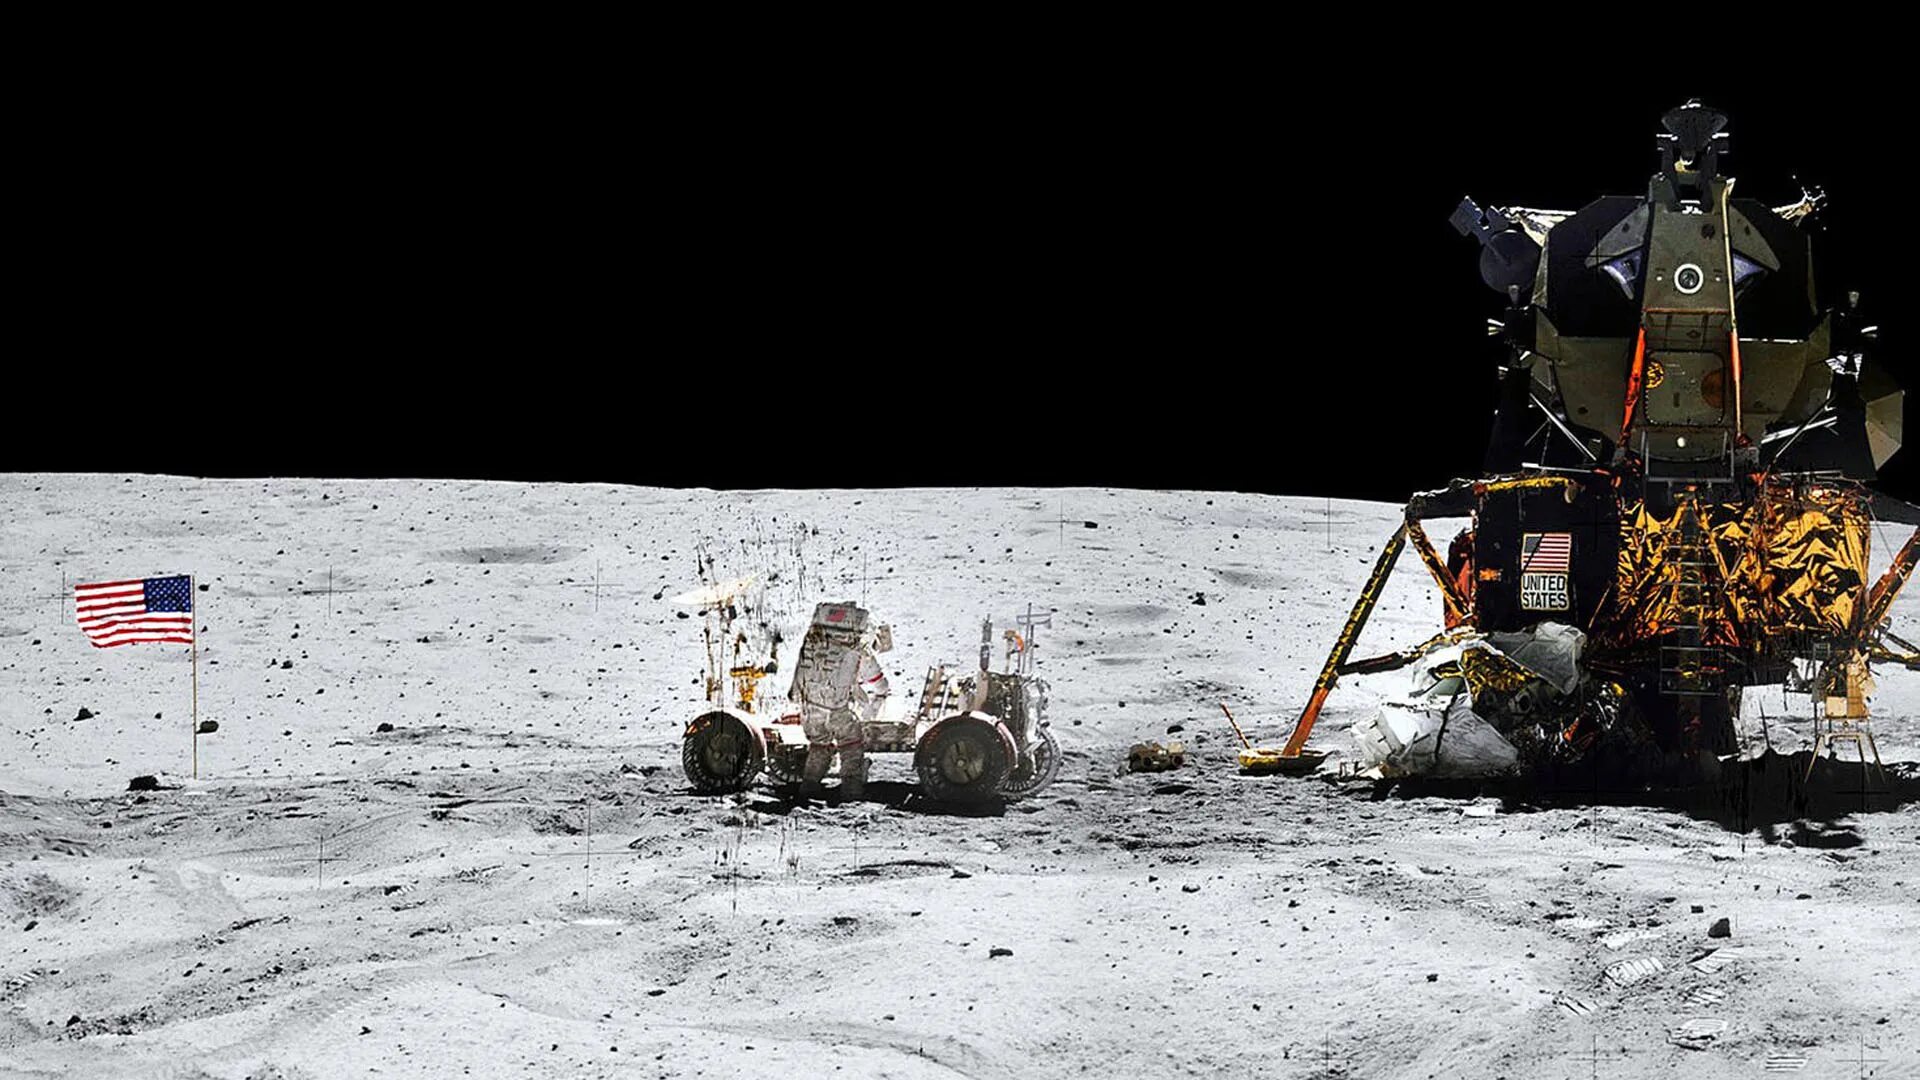 Какой аппарат совершил первую посадку на луну. Космический корабль Аполлон 11. Лунный модуль Аполлон 11. Спускаемый аппарат Аполлон 11. Лунный модуль корабля Аполлон 11 НАСА.